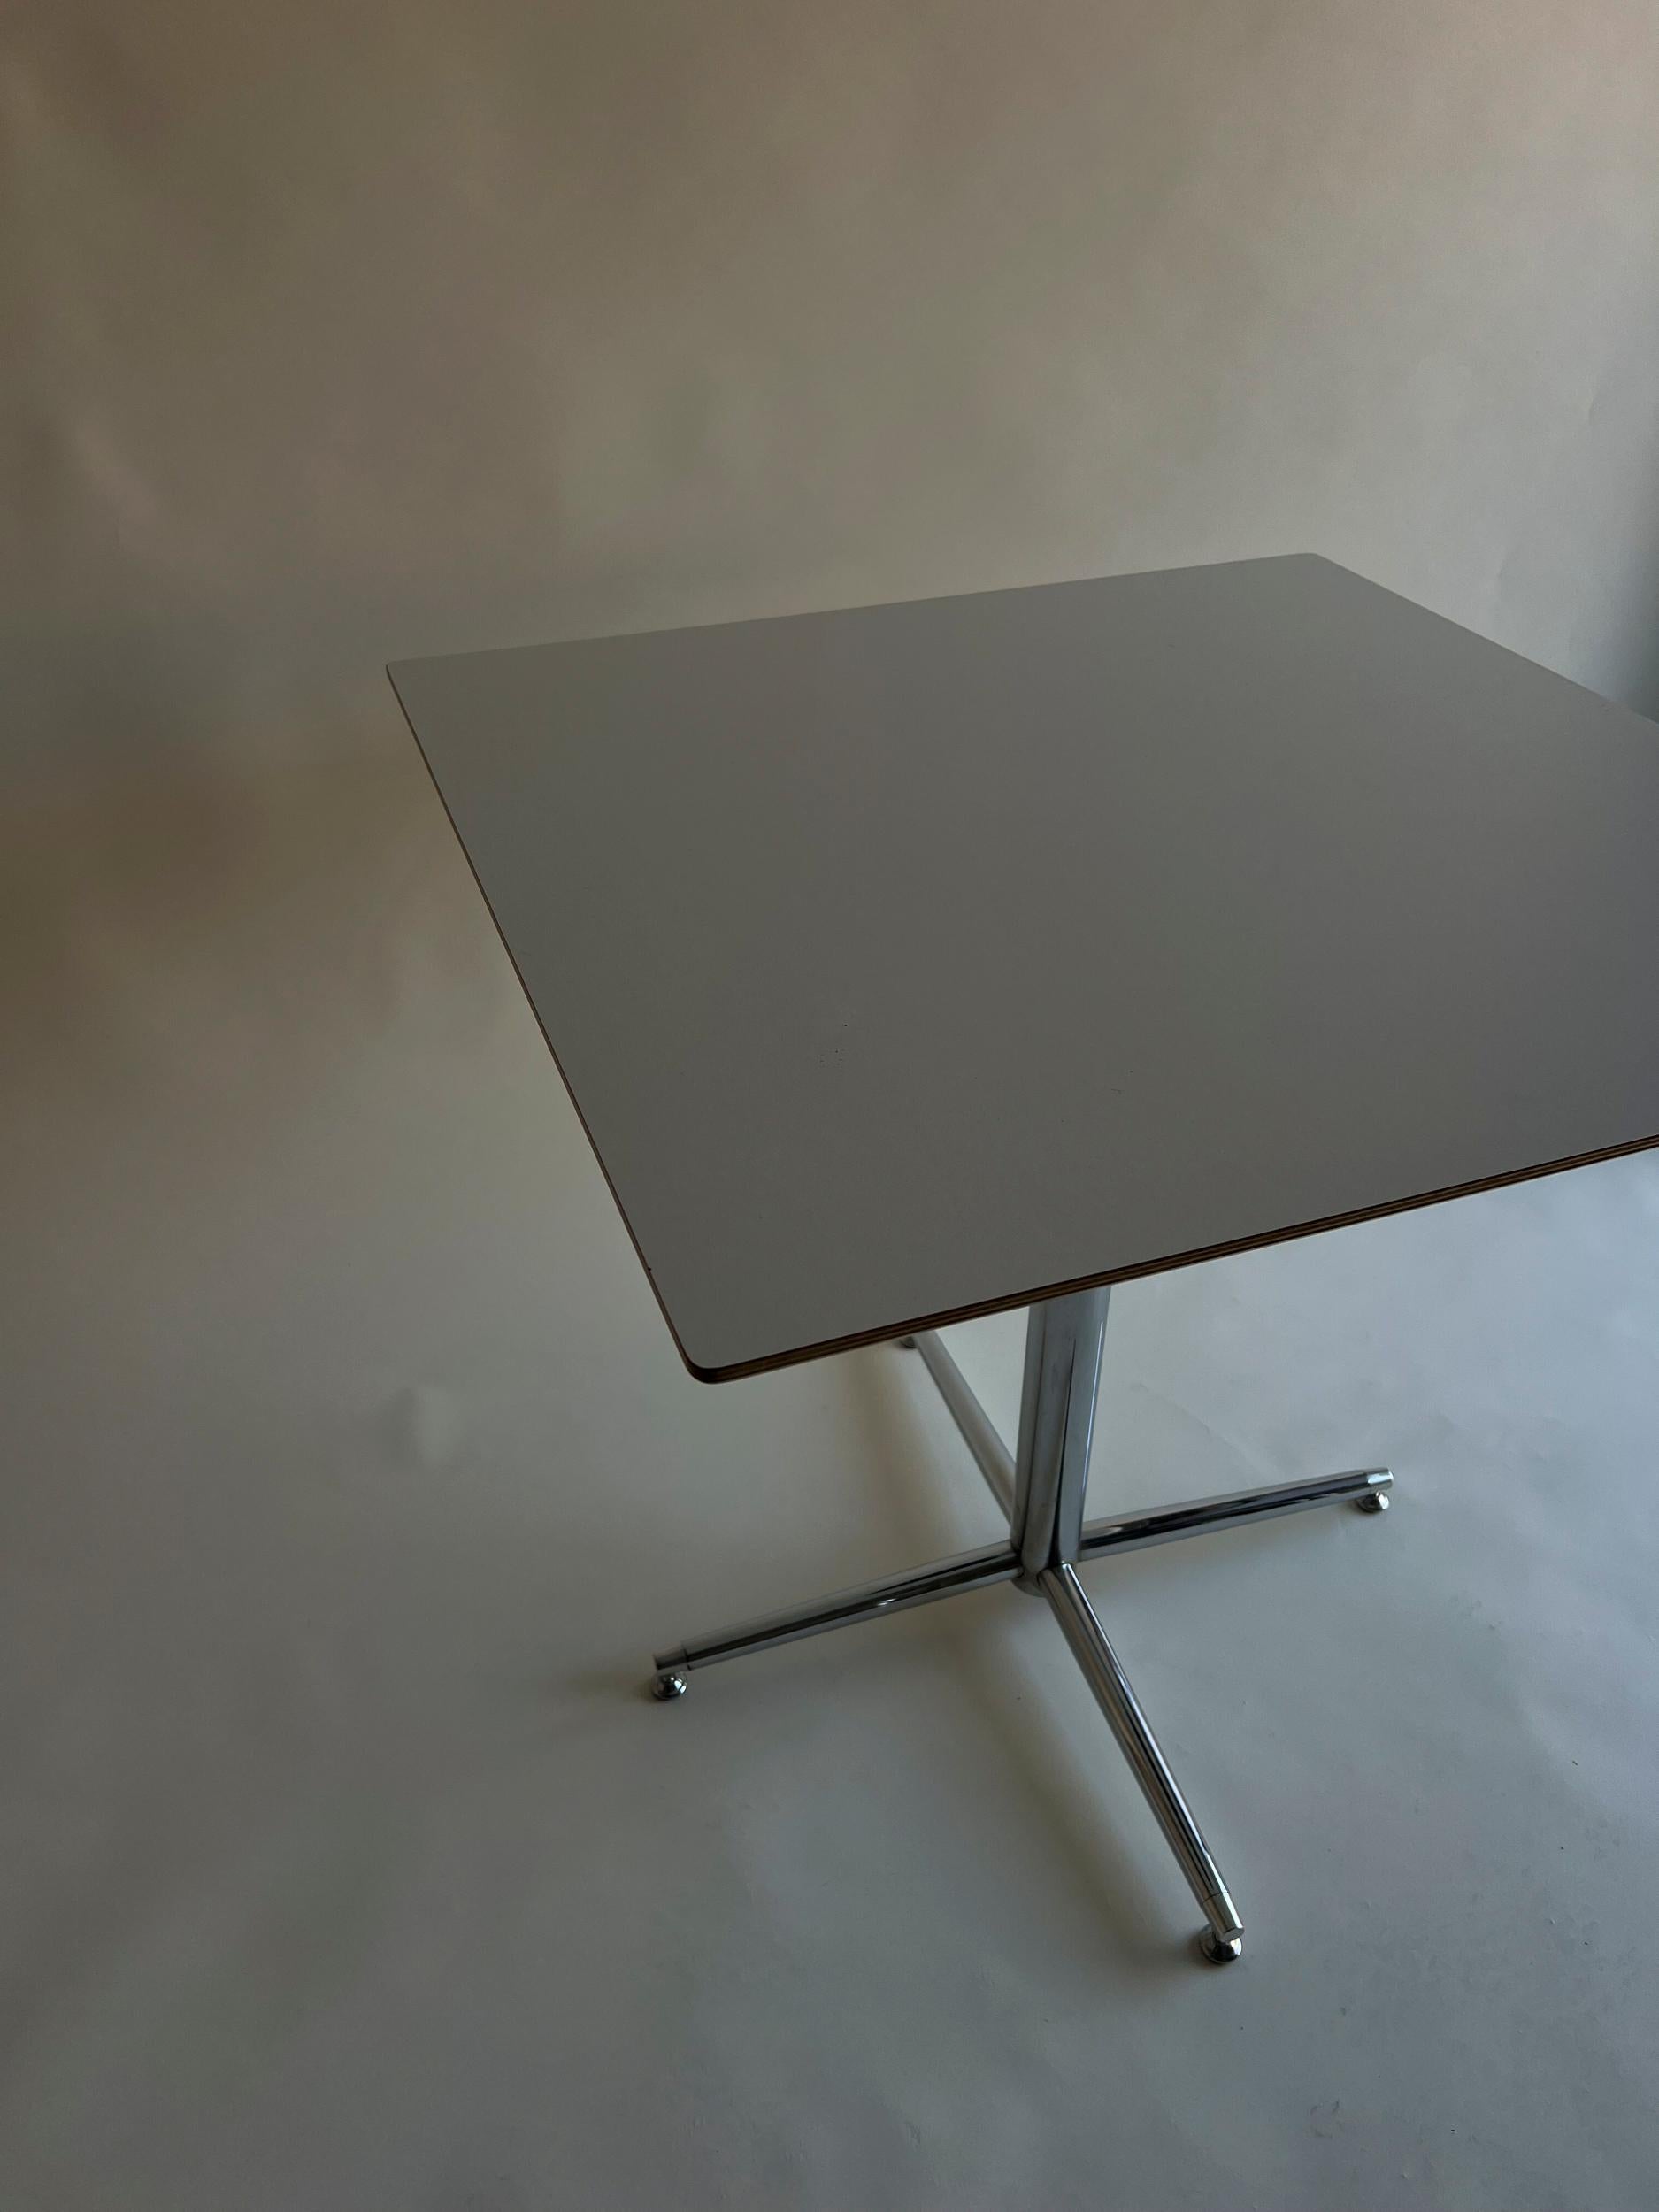 Nicht markiert, aber möglicherweise Artifort durch das Aussehen der robusten Tischplatte. Ein sehr solider und stabiler Tisch, perfekt für kleine Räume.